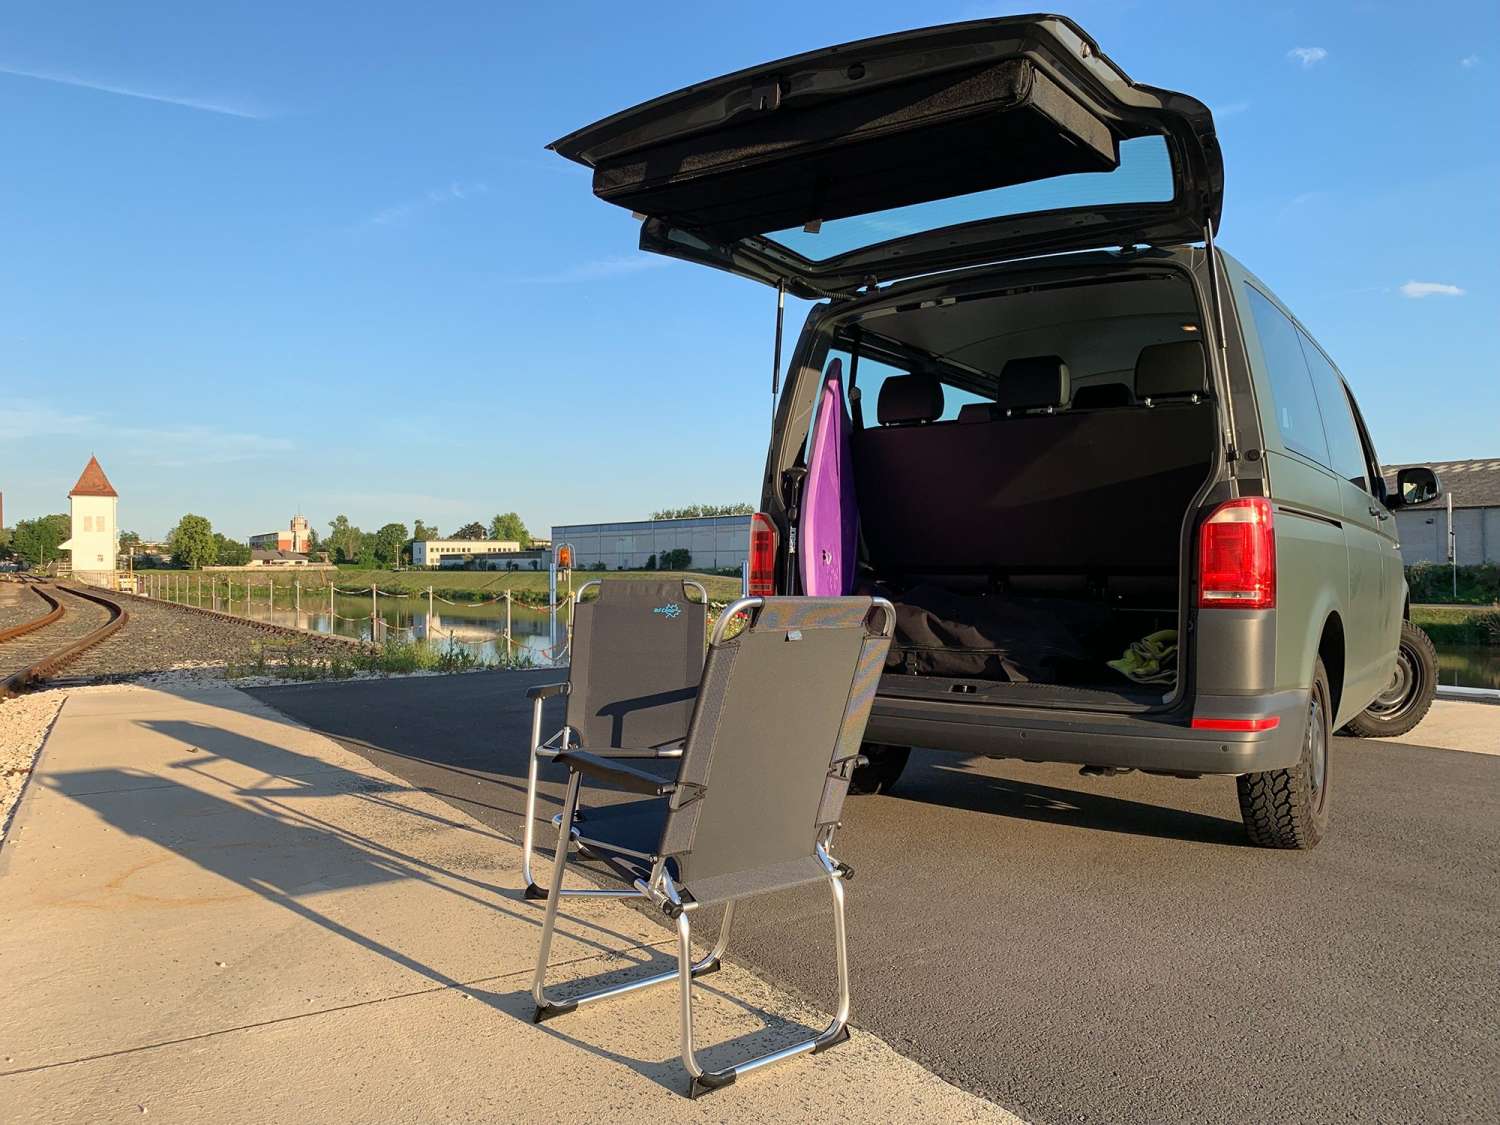 BusBoxx chairBOXX mit 2 Stühlen VW T5 / T6 Campingstuhlmodul jetzt  bestellen!